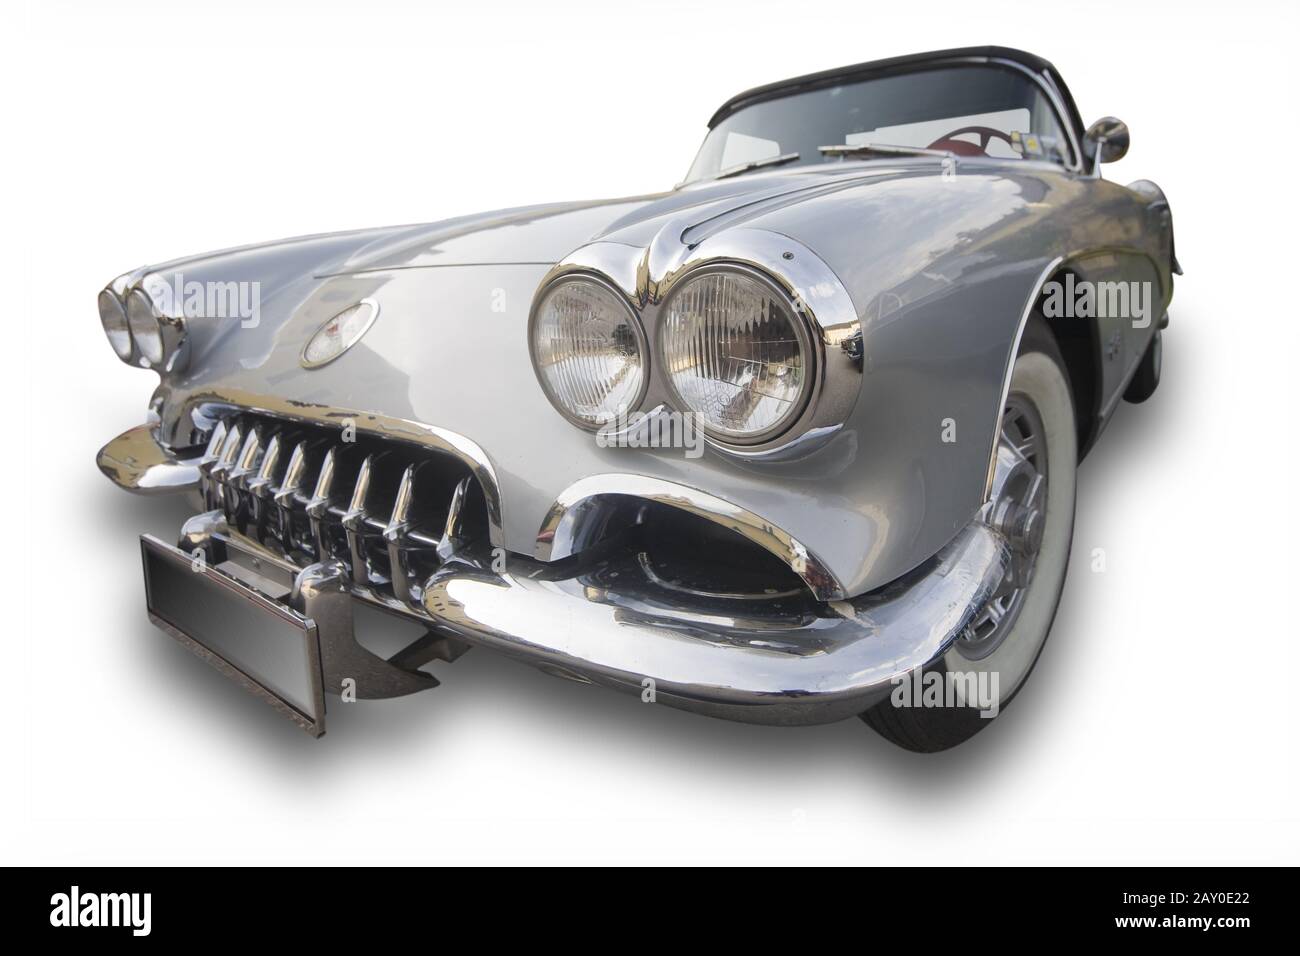 Oldtimer, Chevrolet Corvette Baujahr 1958 - Oldtimer, Chevrolet Corvette 1958 Foto Stock